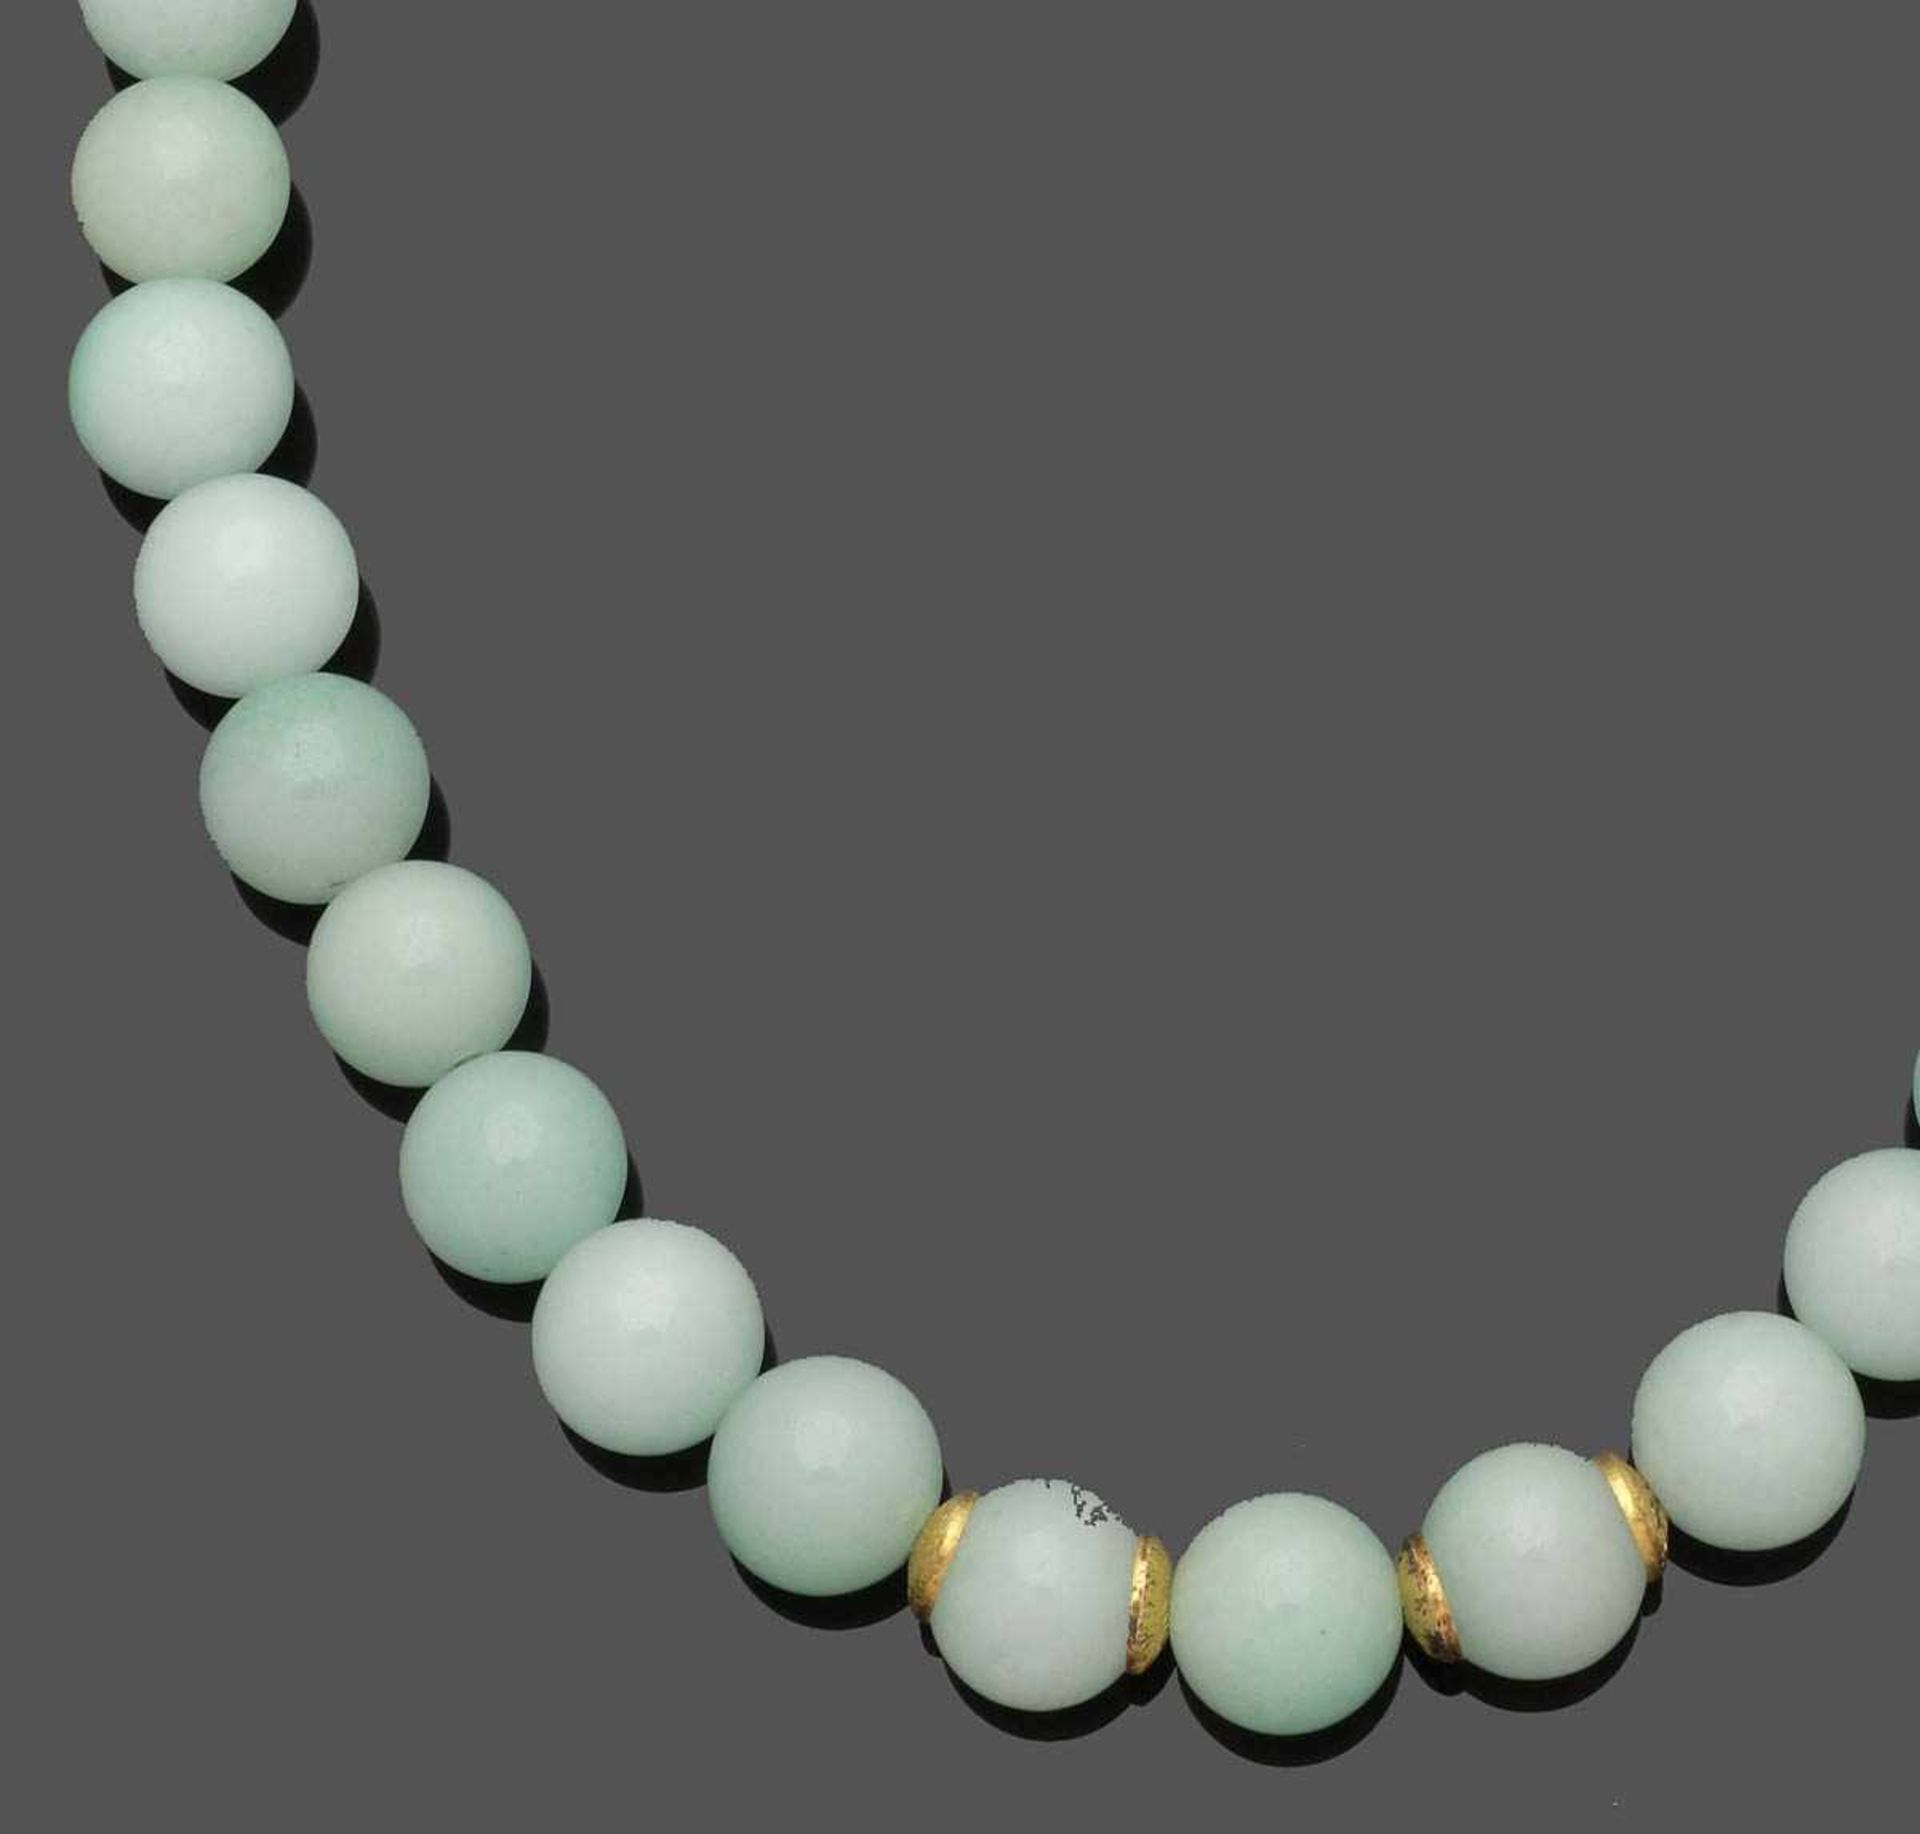 Dekoratives Jadeitcollier A jadeite-necklace 925er Silber, gestemp., vergoldet. 43 Jadeitkugeln (